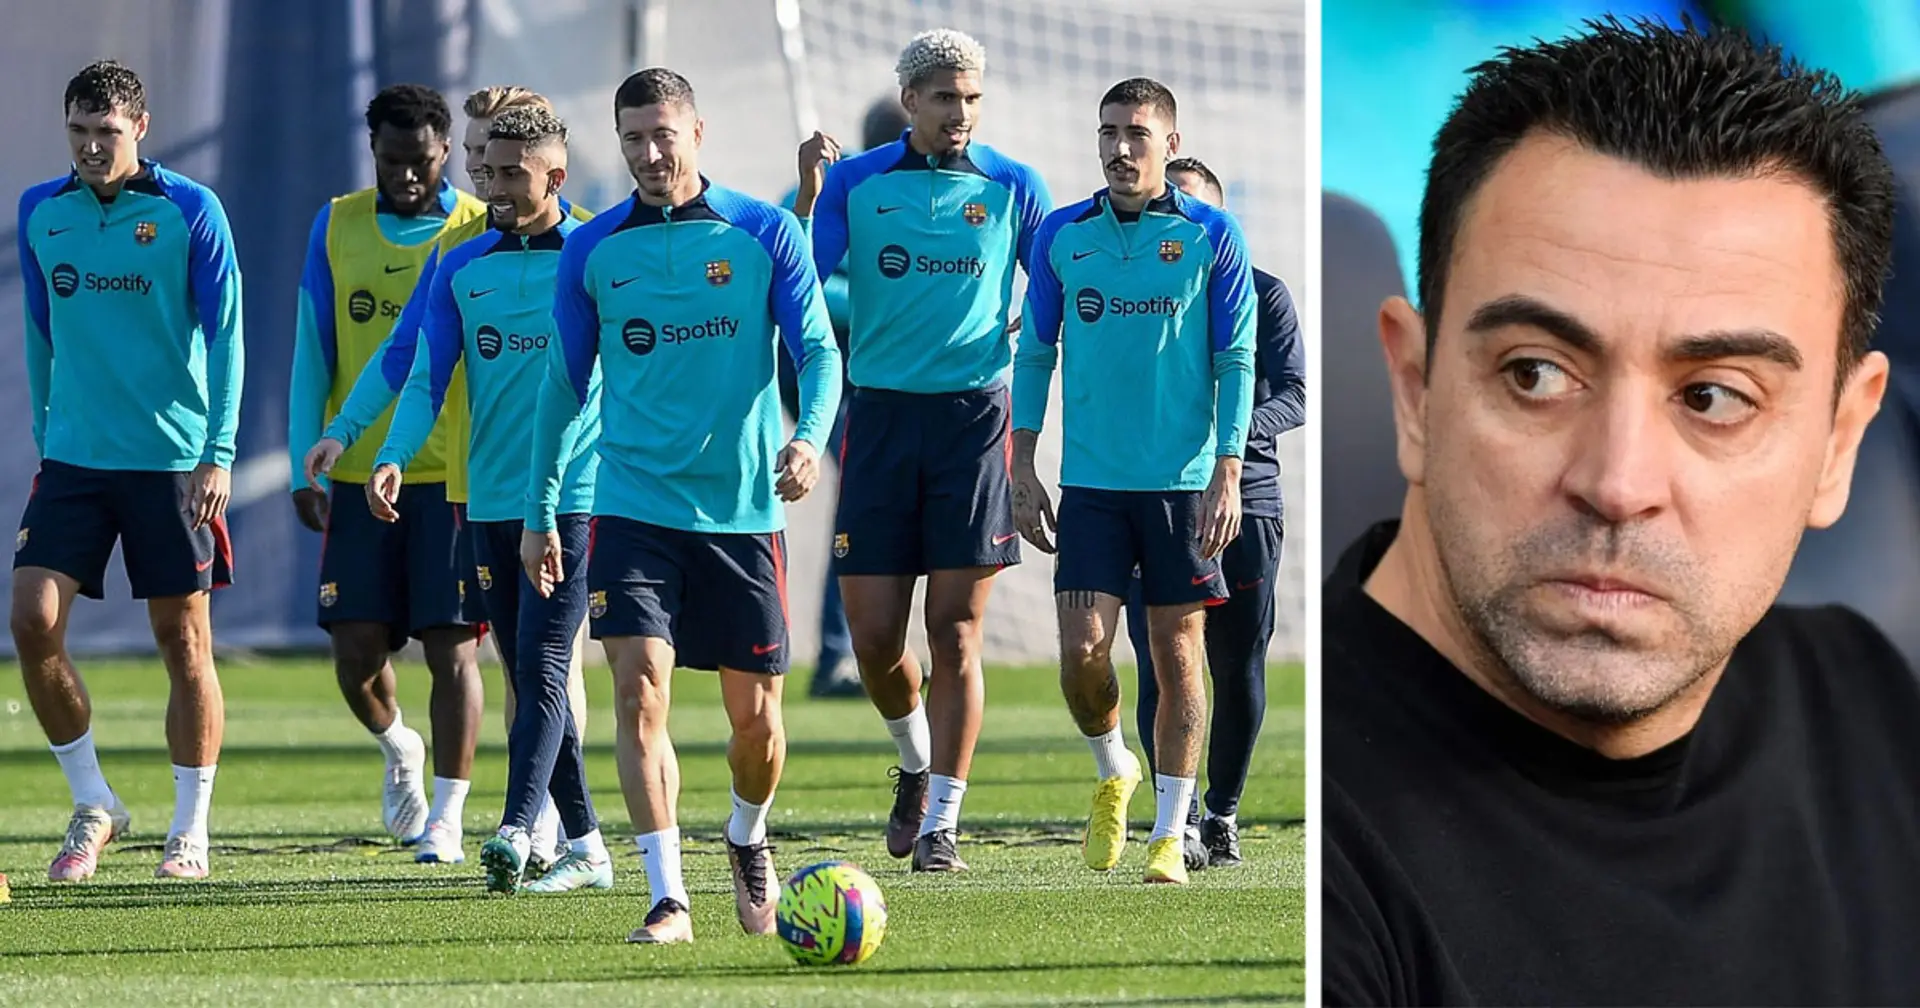 Xavi annule les vacances prévues pour l'équipe car il est en colère après le résultat contre l'Espanyol